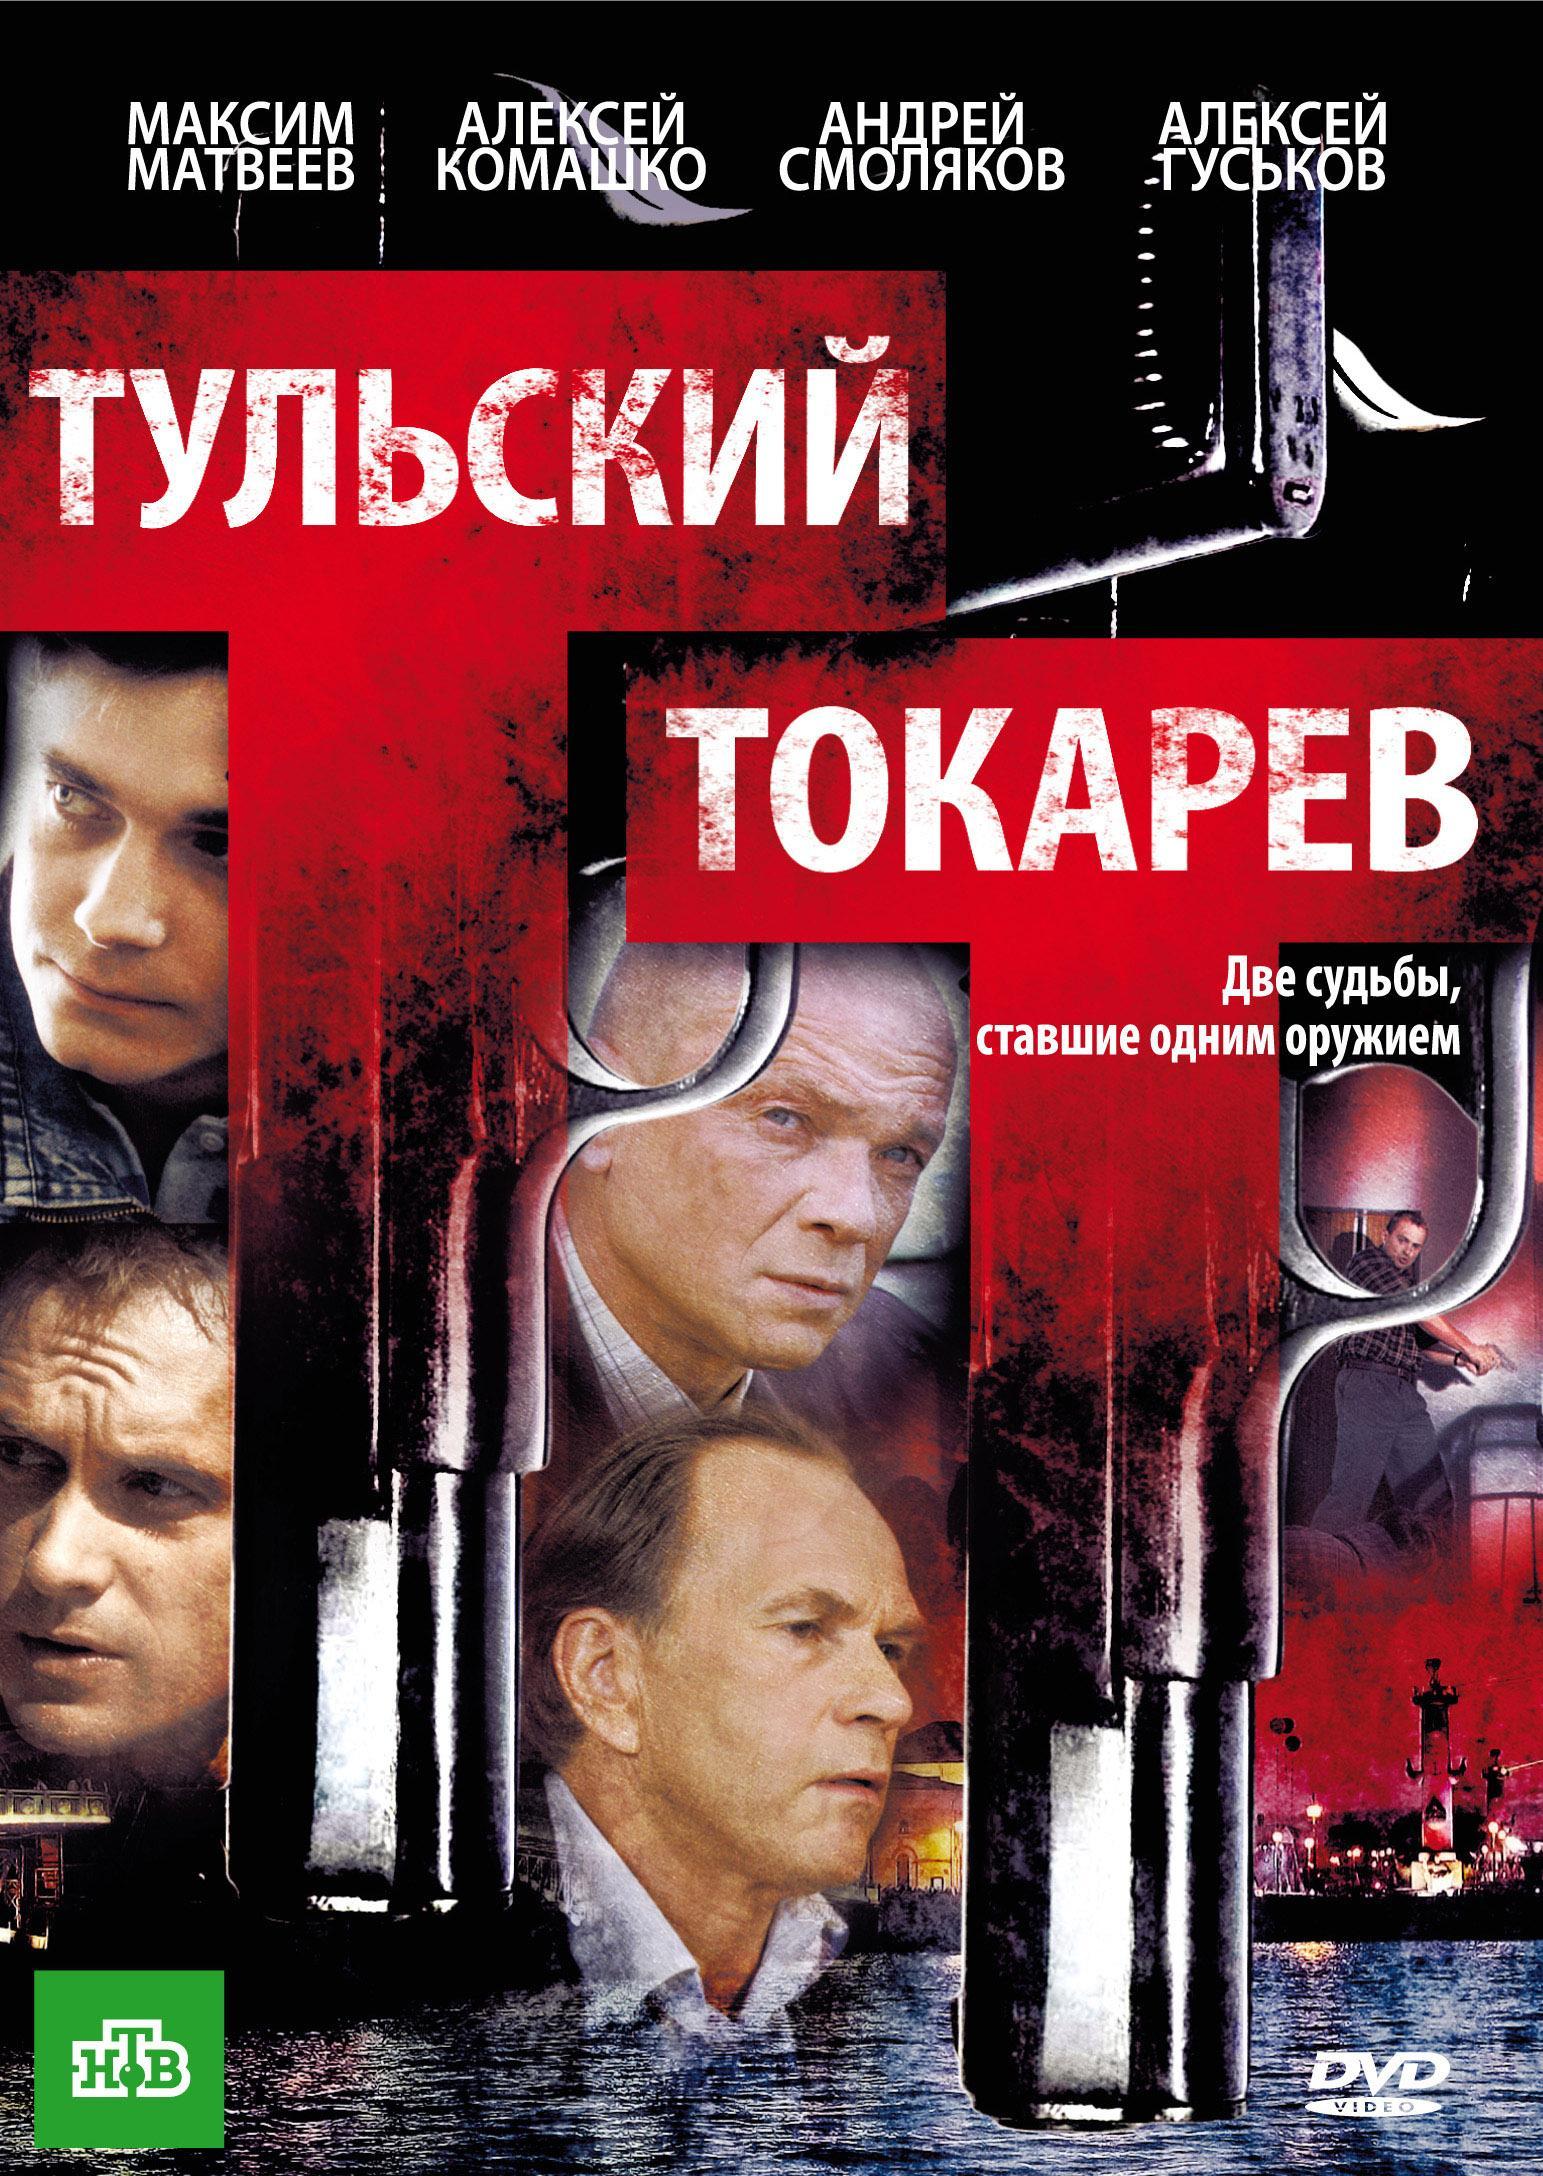 Постер фильма Тульский Токарев